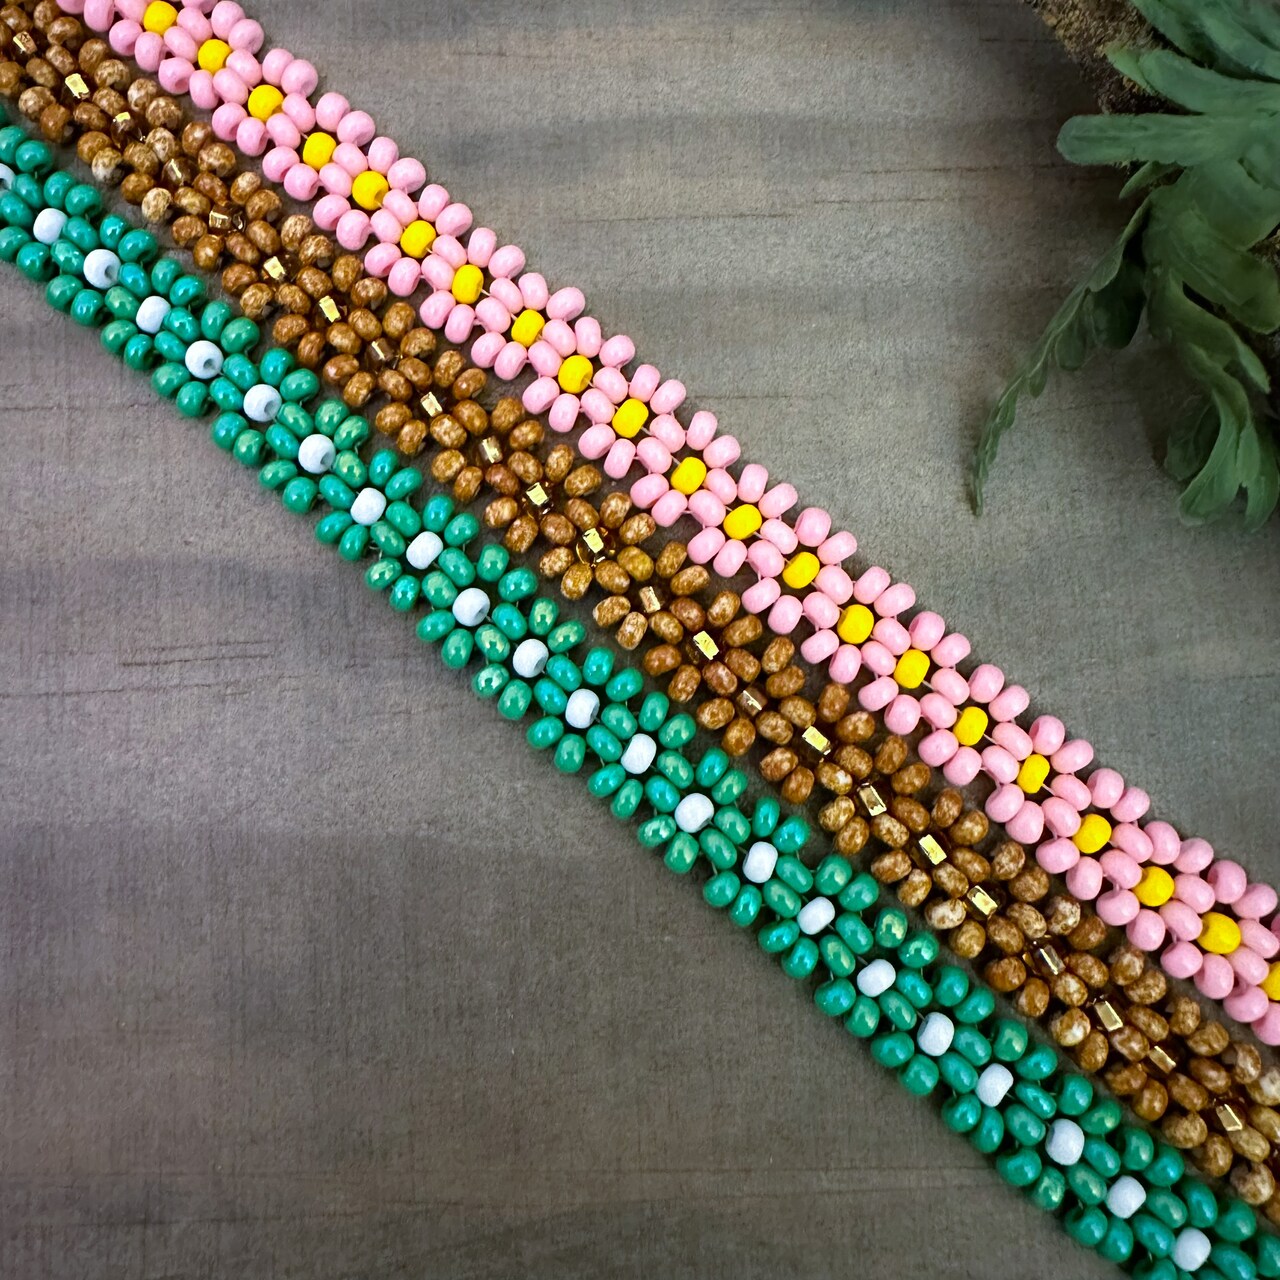 Daisy Chain Bracelets with @daniellewickesjewelry